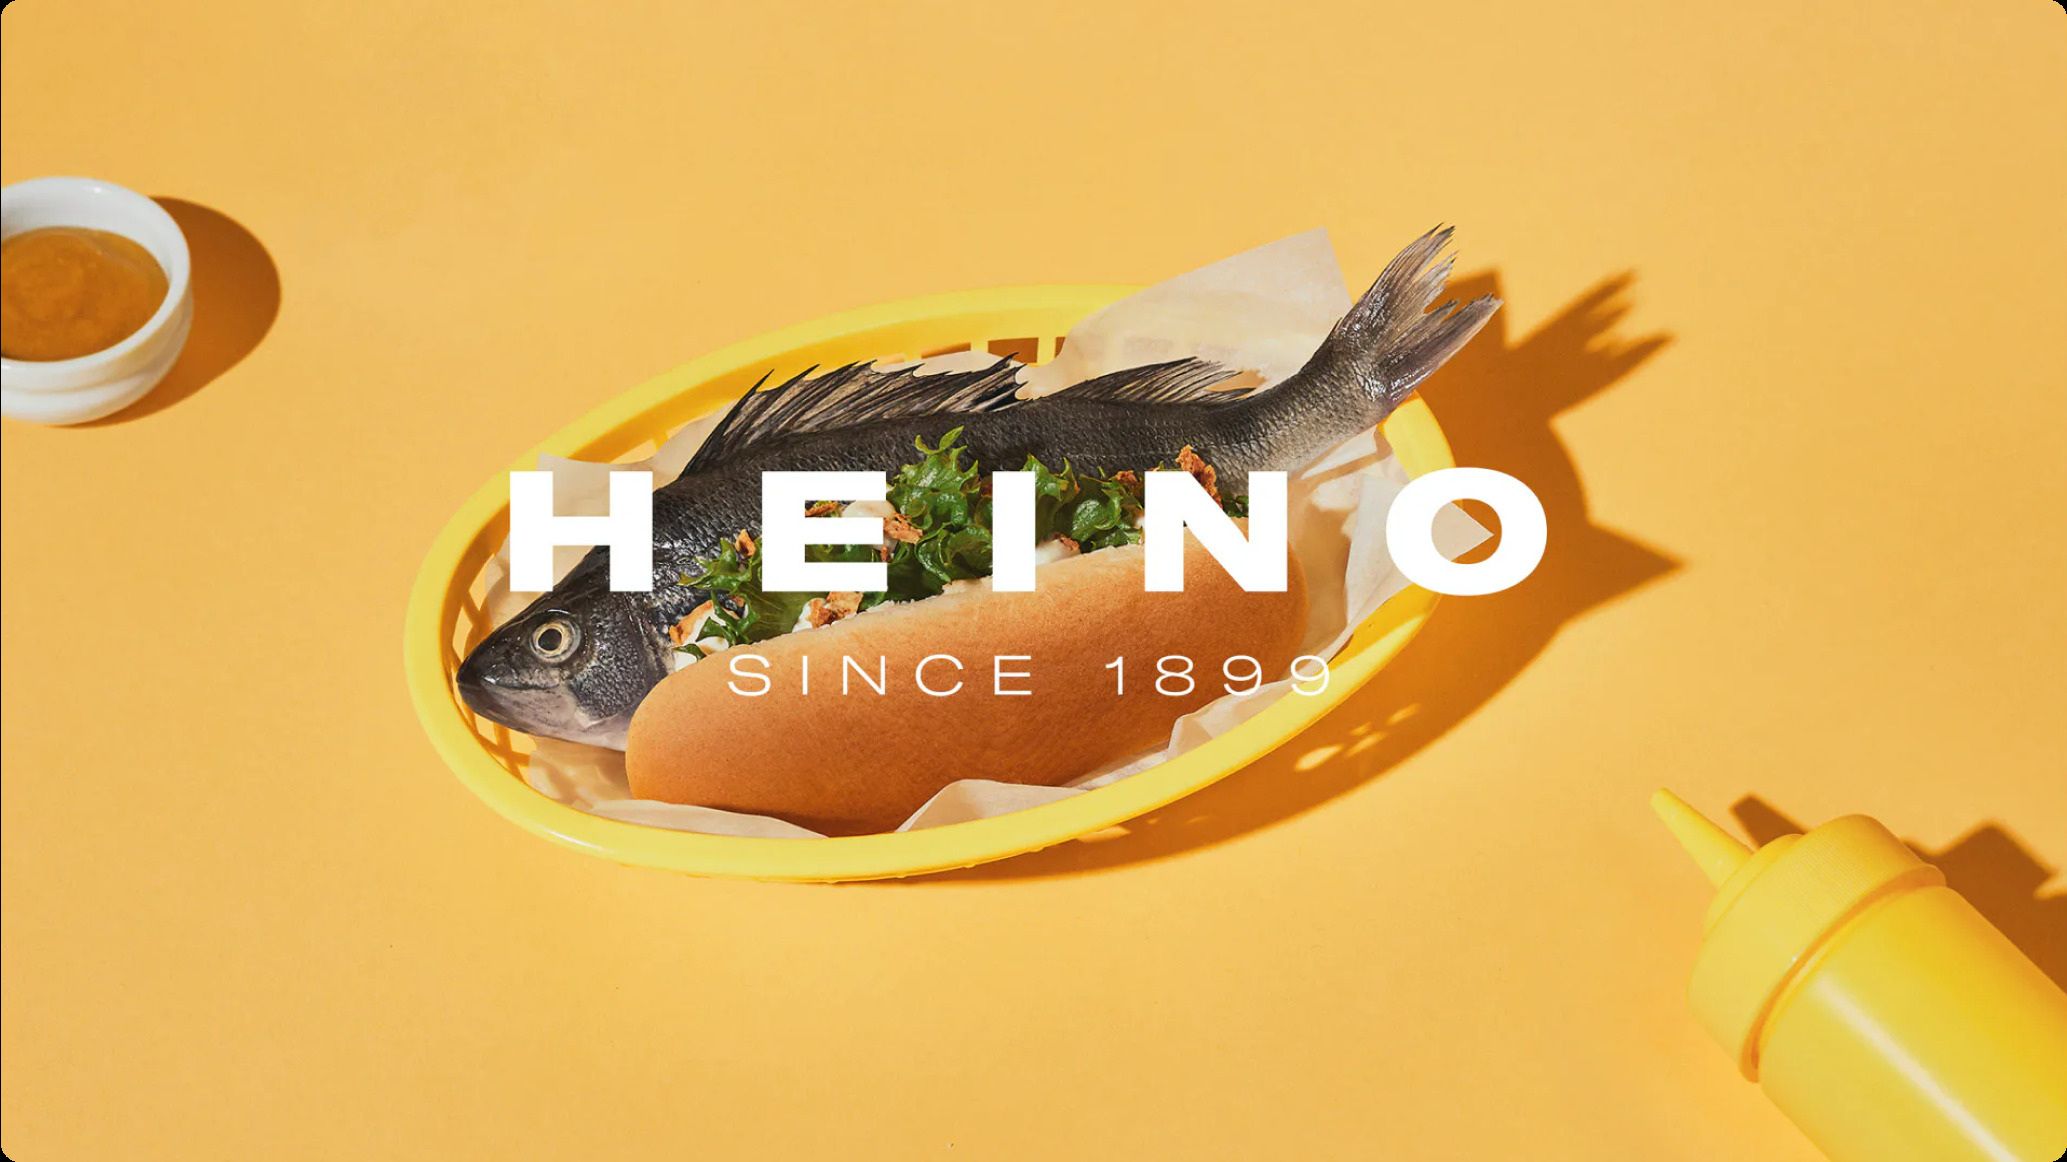 Heino logo with fish hot dog